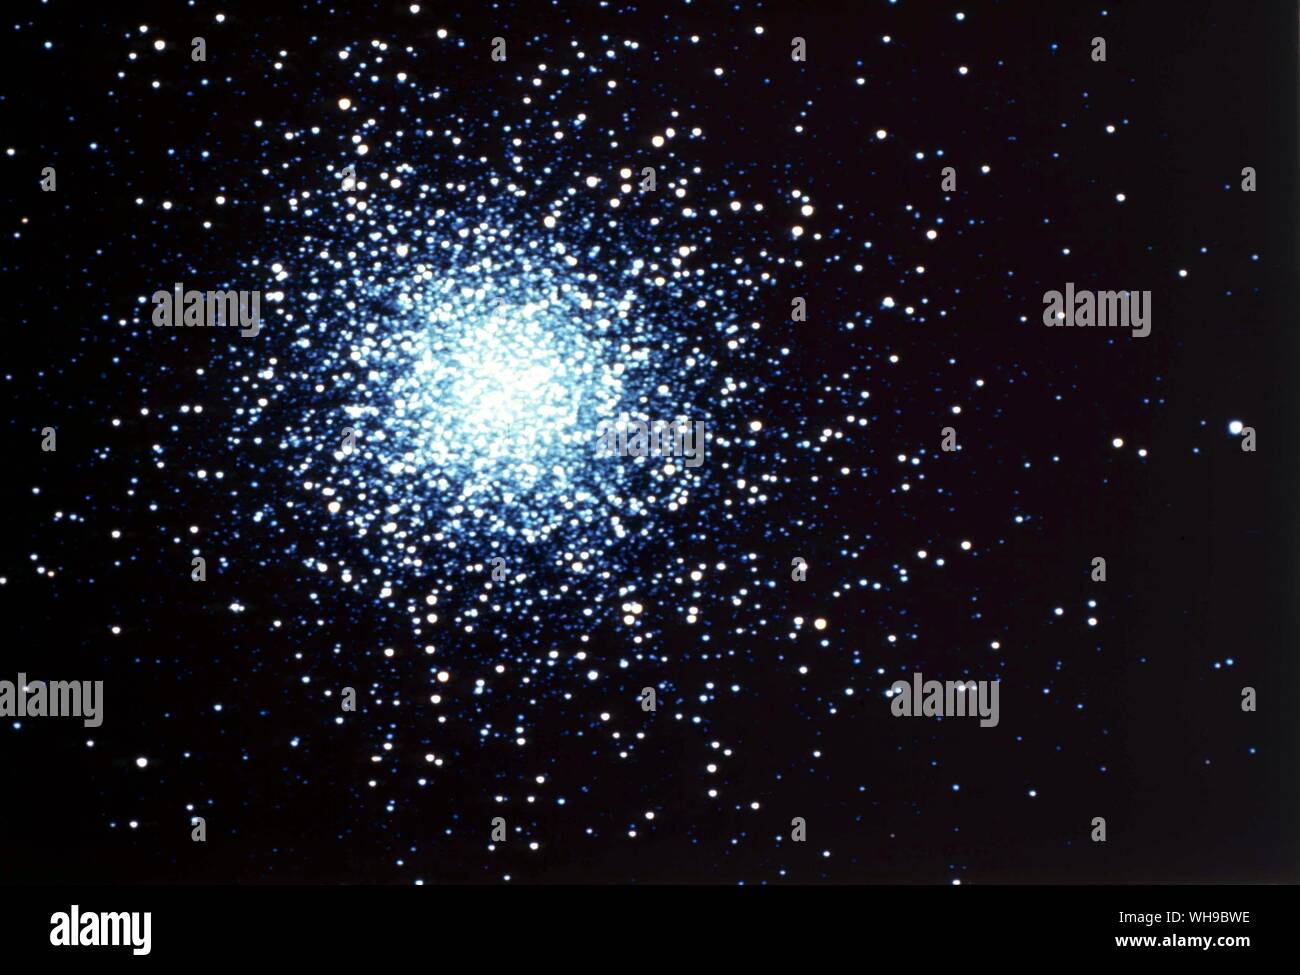 Espacio/Estrellas/Galaxias/nebulosa. Hercules M13 Foto de stock